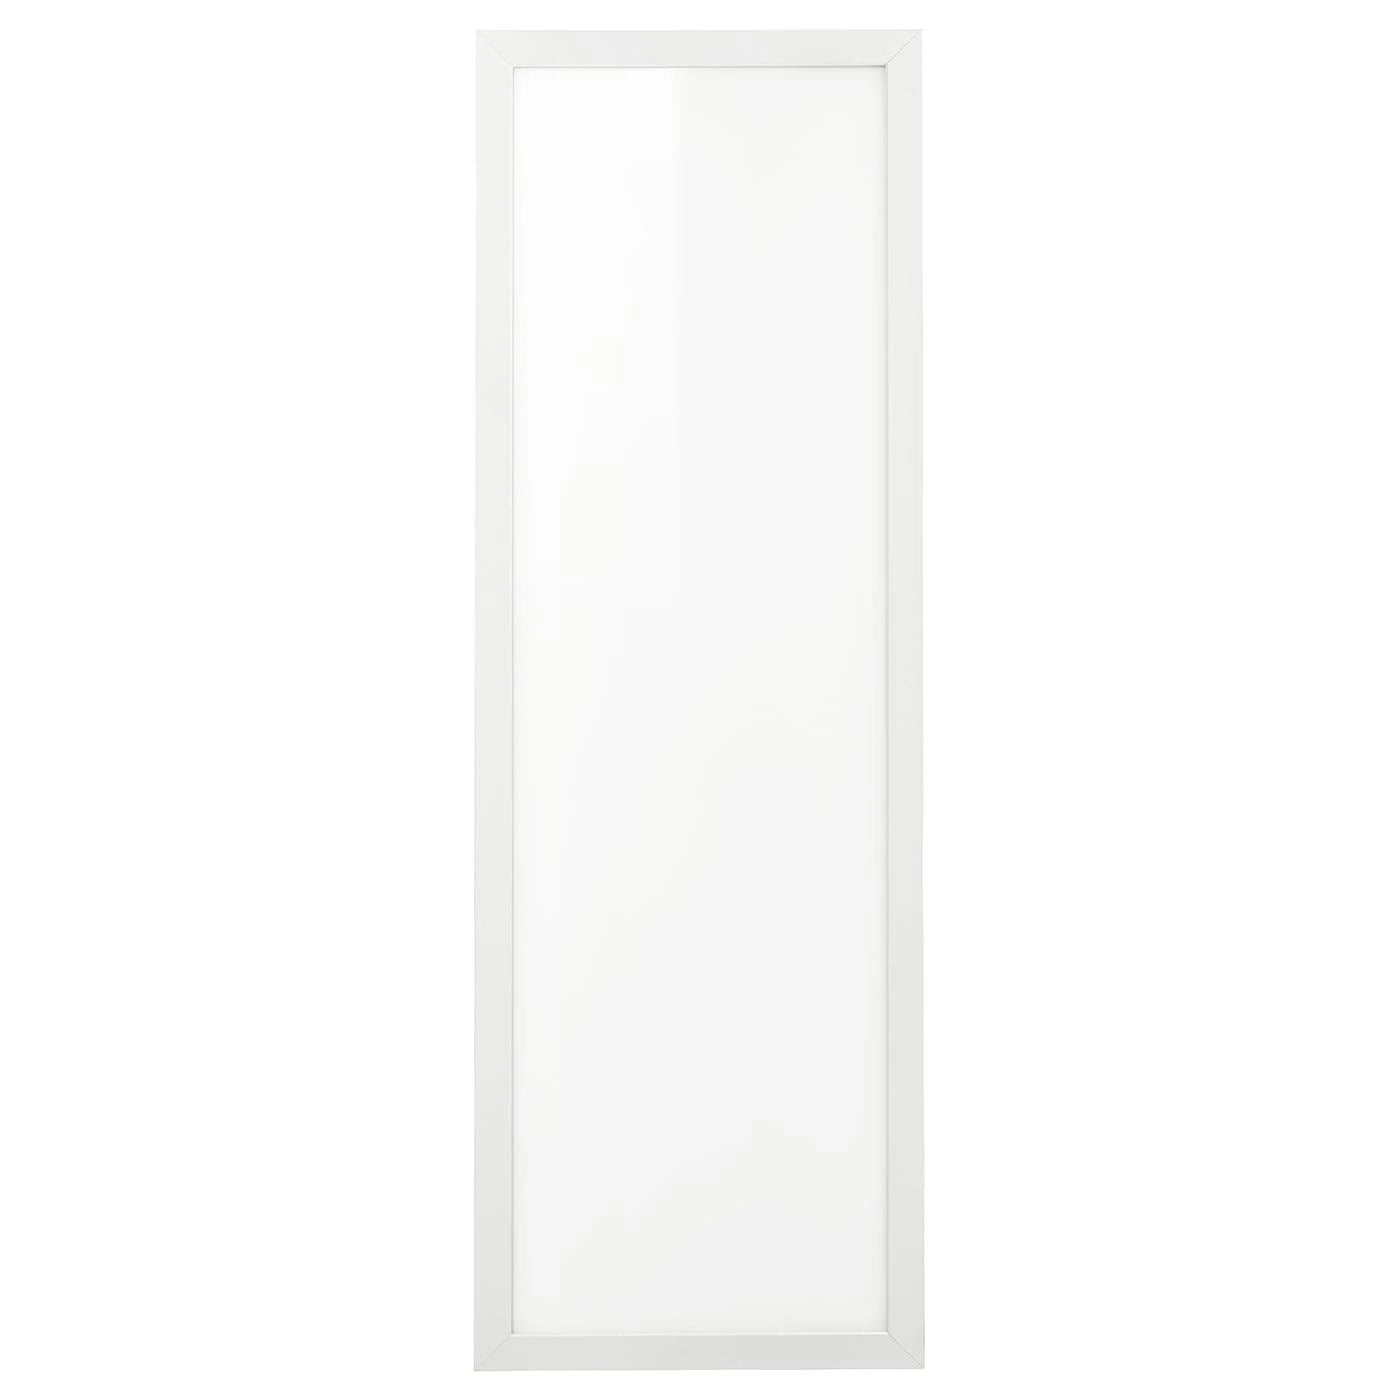 IKEA - FLOALT LED Light Dimmable White Spectrum, 12x35 40303076 –